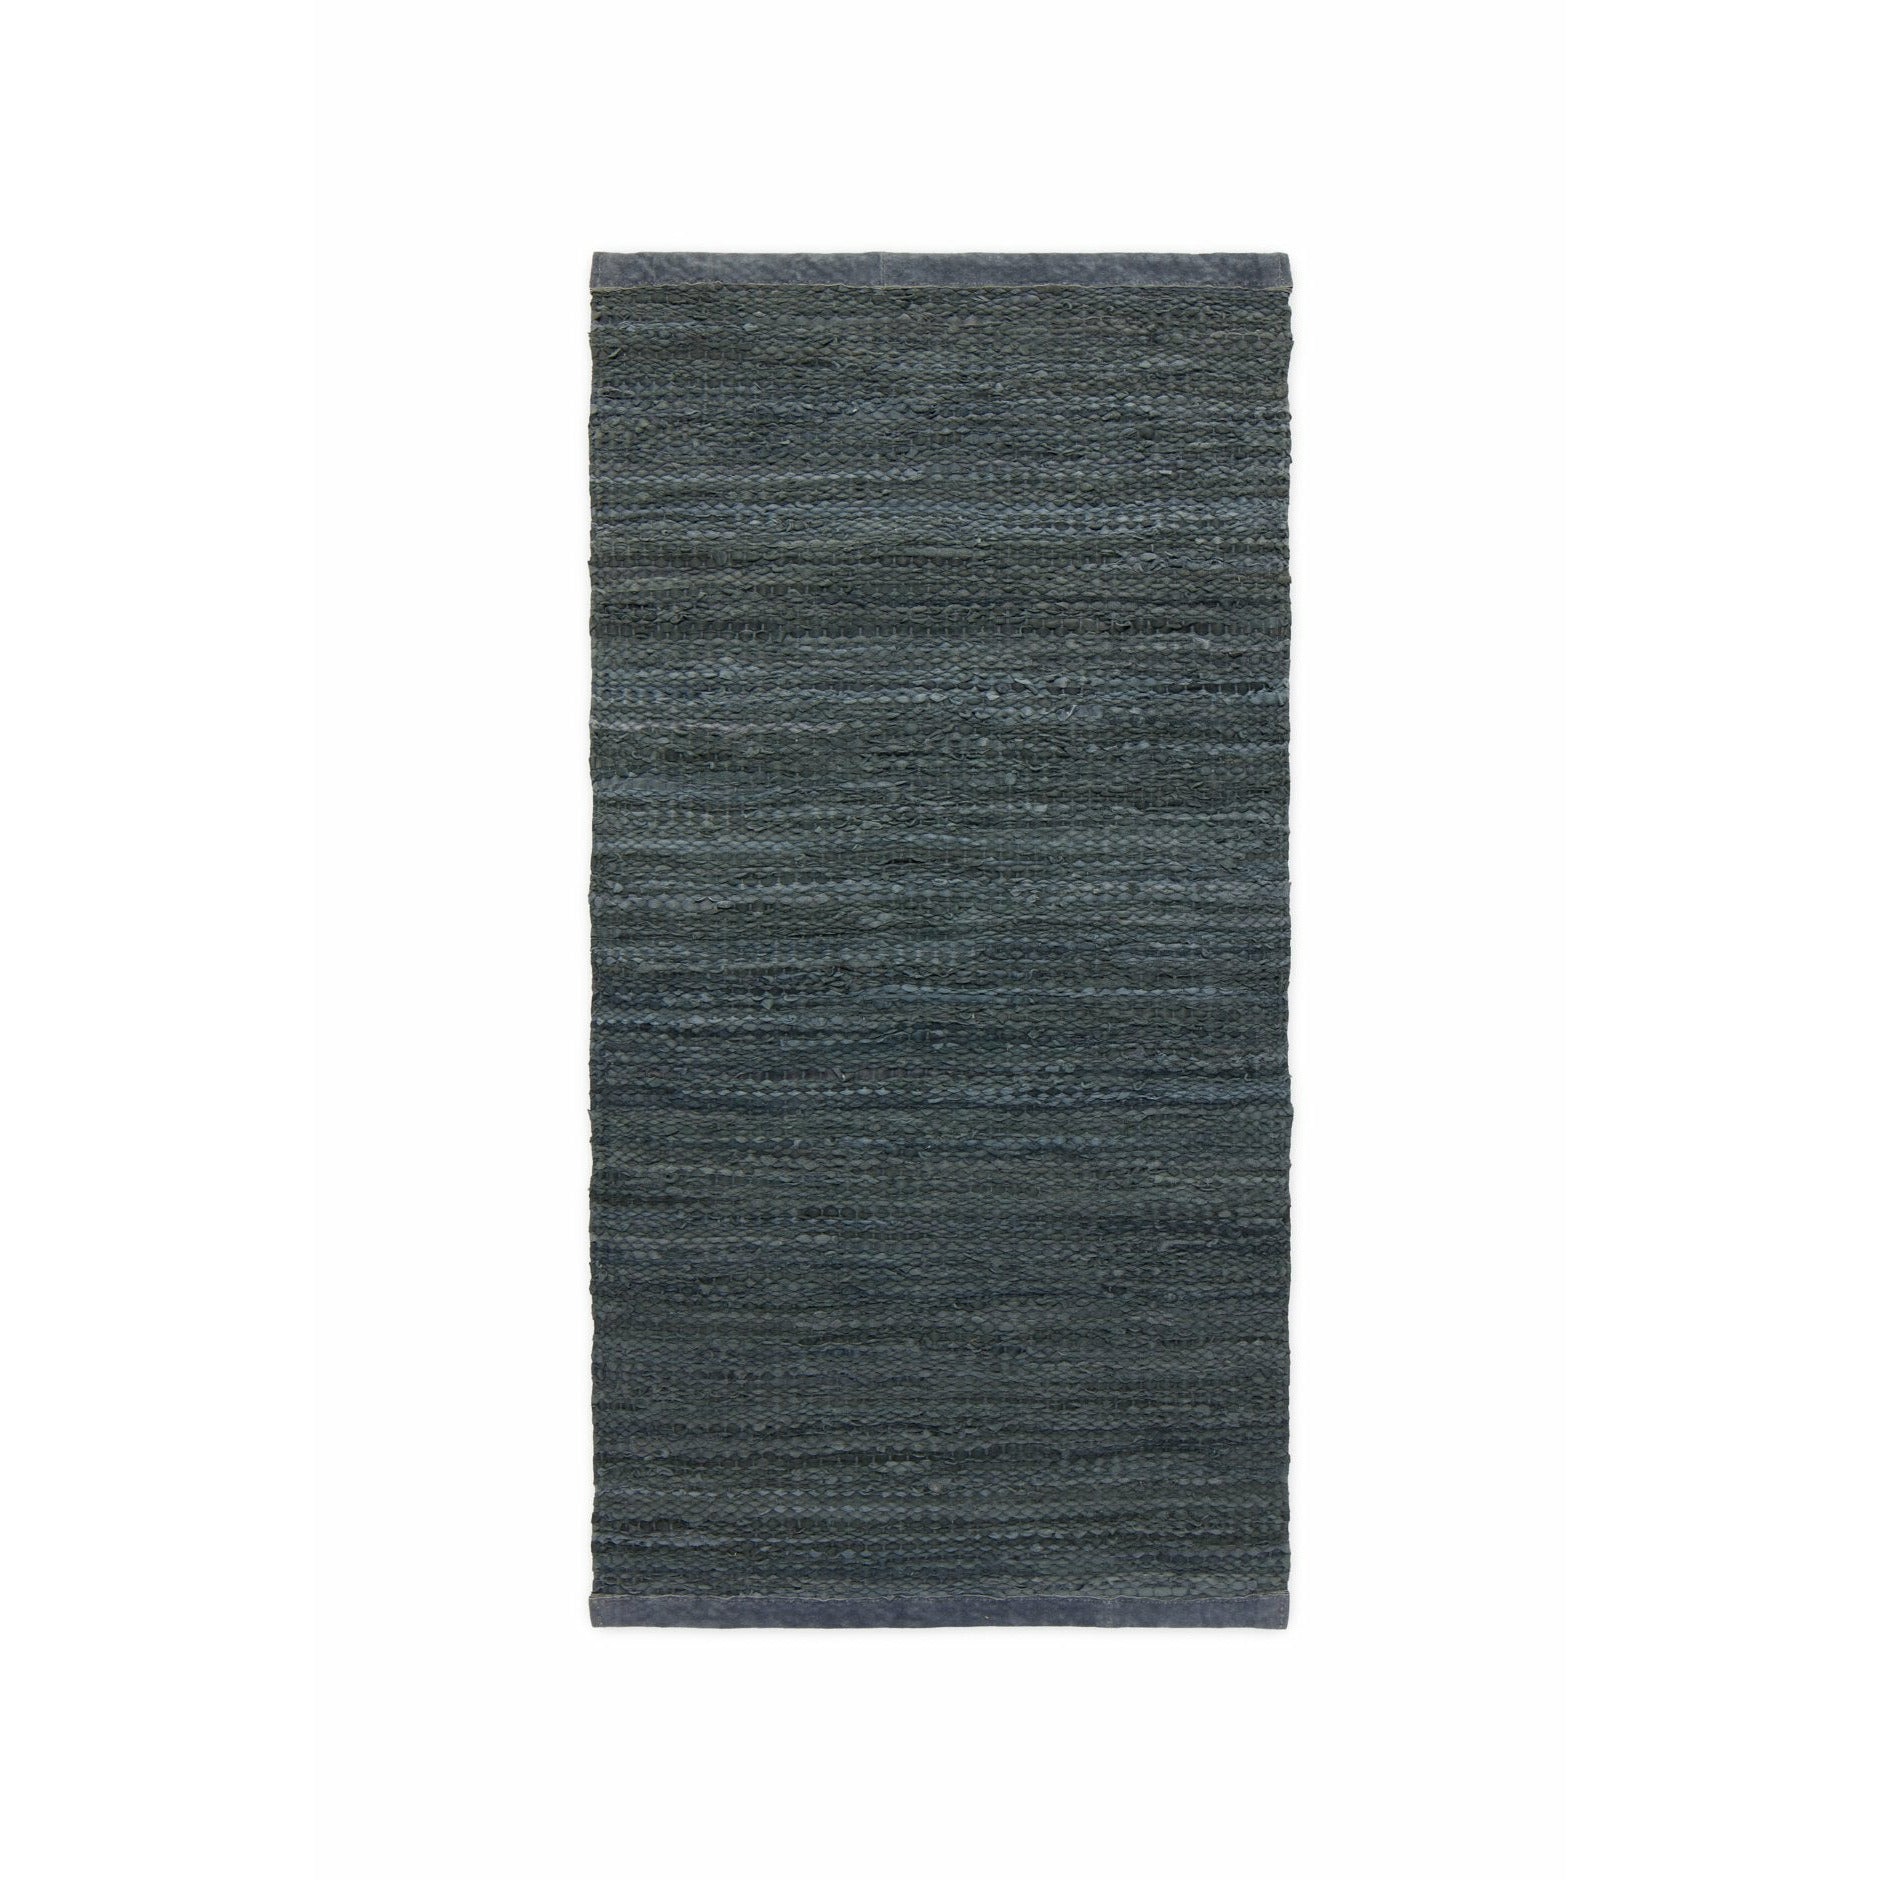 Tapete de couro sólido cinza escuro, 75 x 200 cm